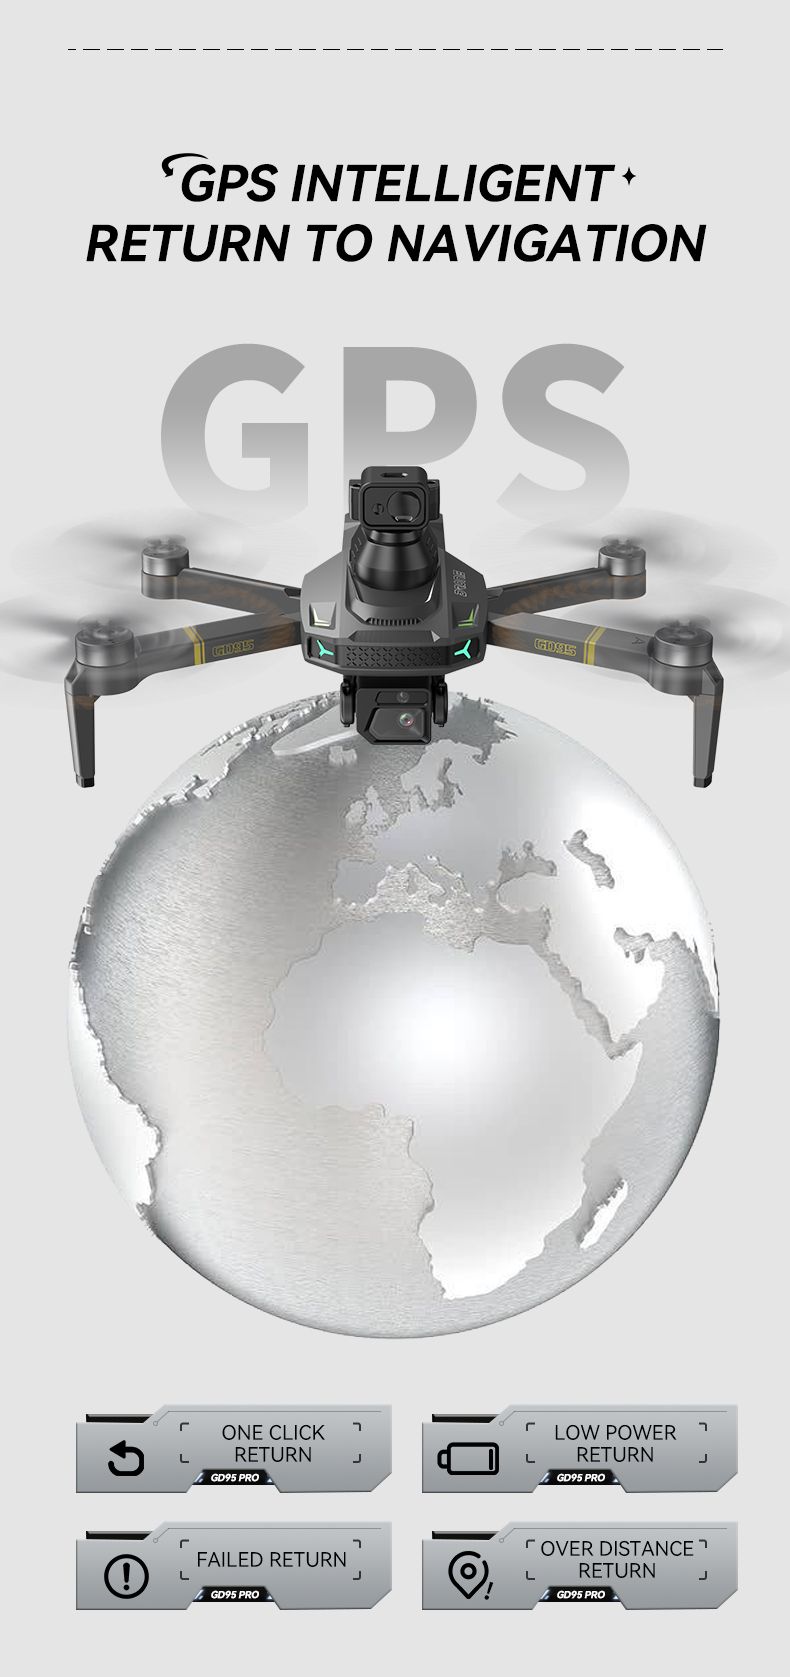 Drone GPS domhanda GD95 Drone le Ceamara 4K agus Mótair Gan Scuab 5 Taobh Constaicí a Sheachaint (6)